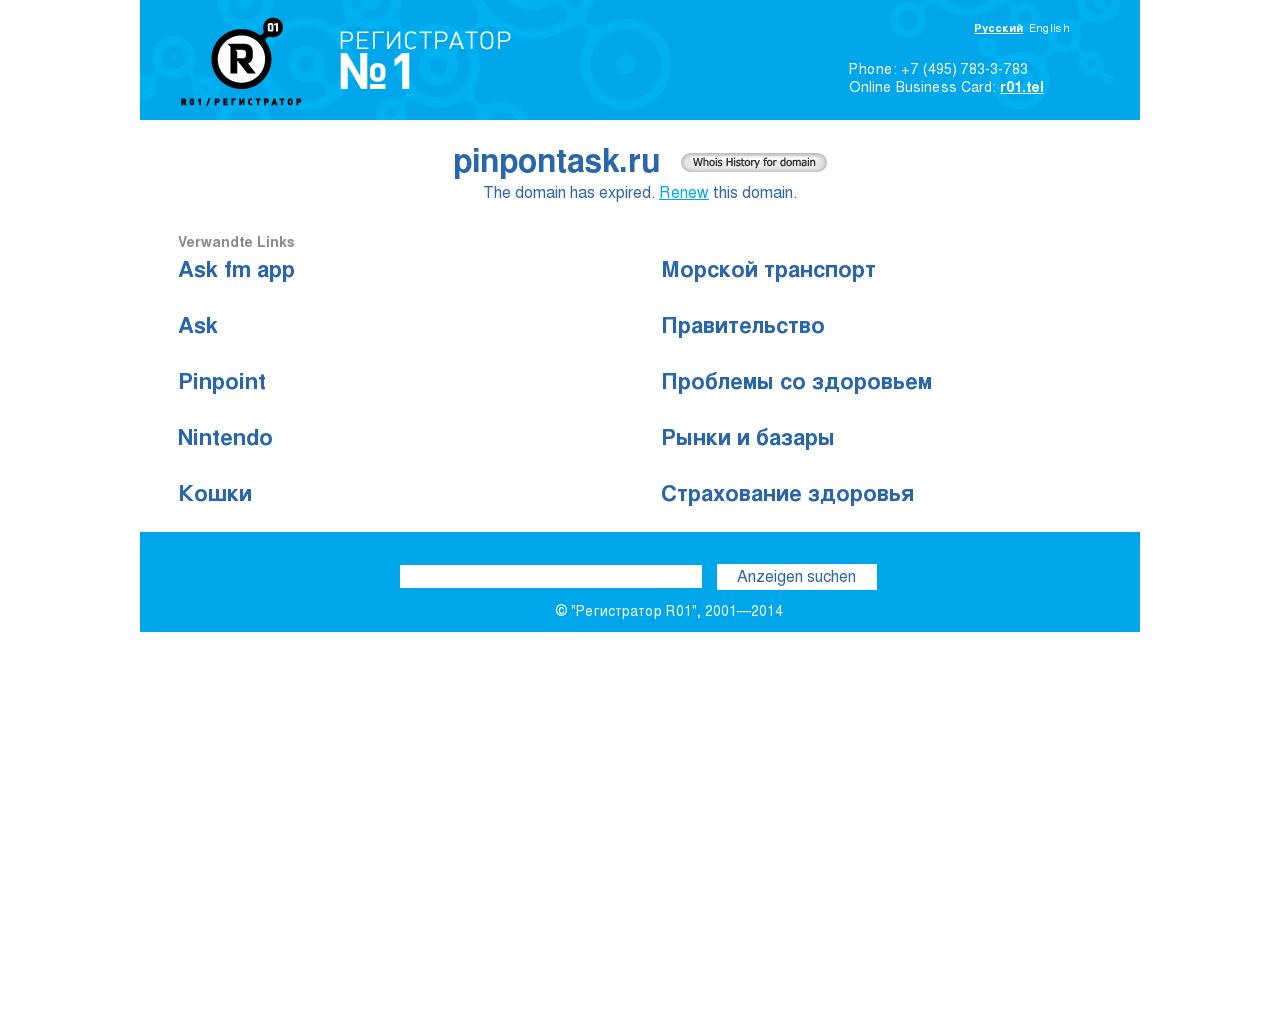 Изображение сайта pinpontask.ru в разрешении 1280x1024